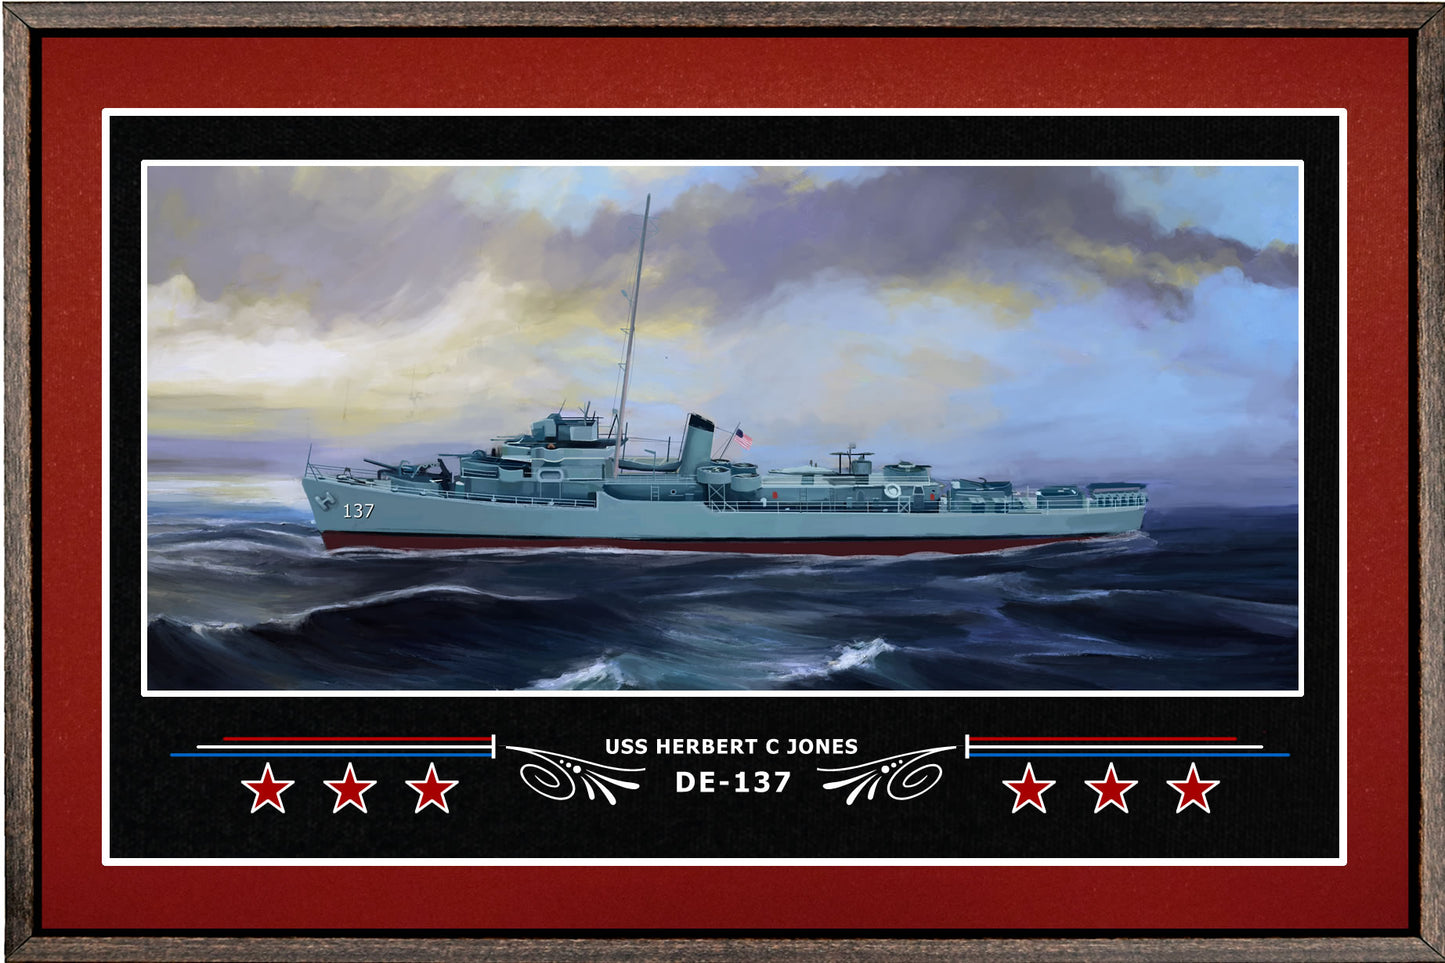 USS HERBERT C JONES DE 137 BOX FRAMED CANVAS ART BURGUNDY